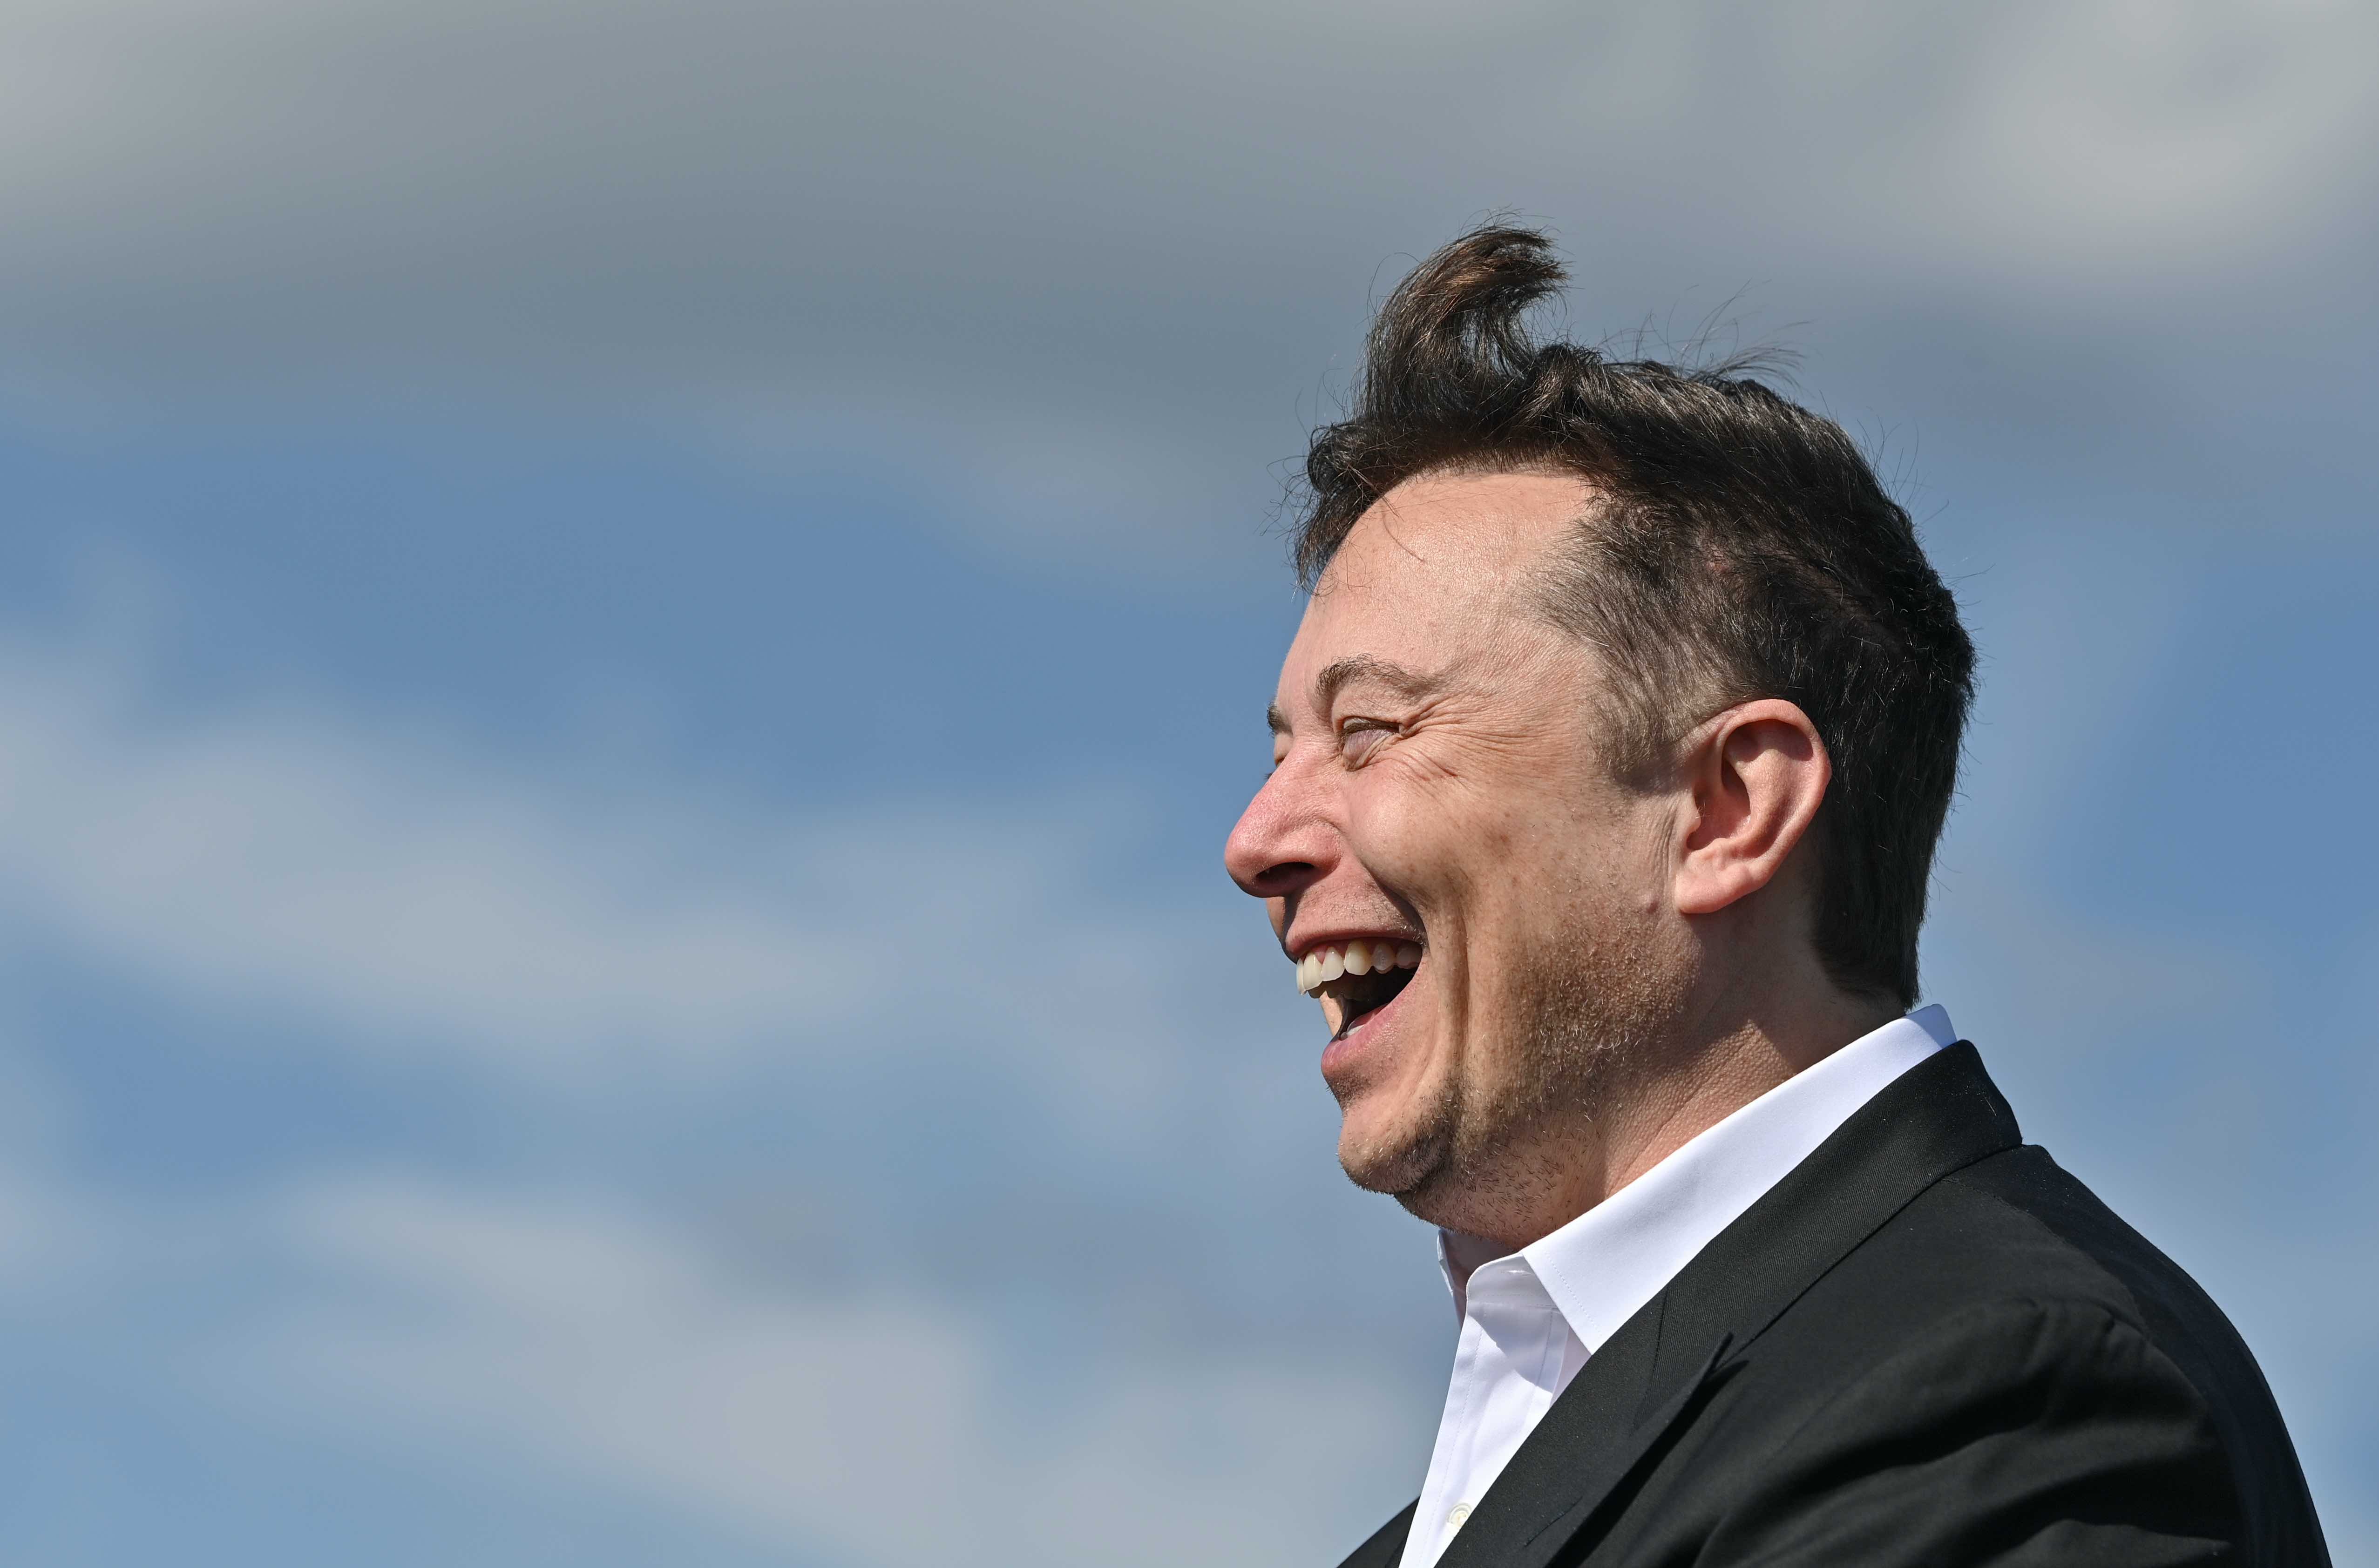 20210108-image-dpa-mb-Elon Musk